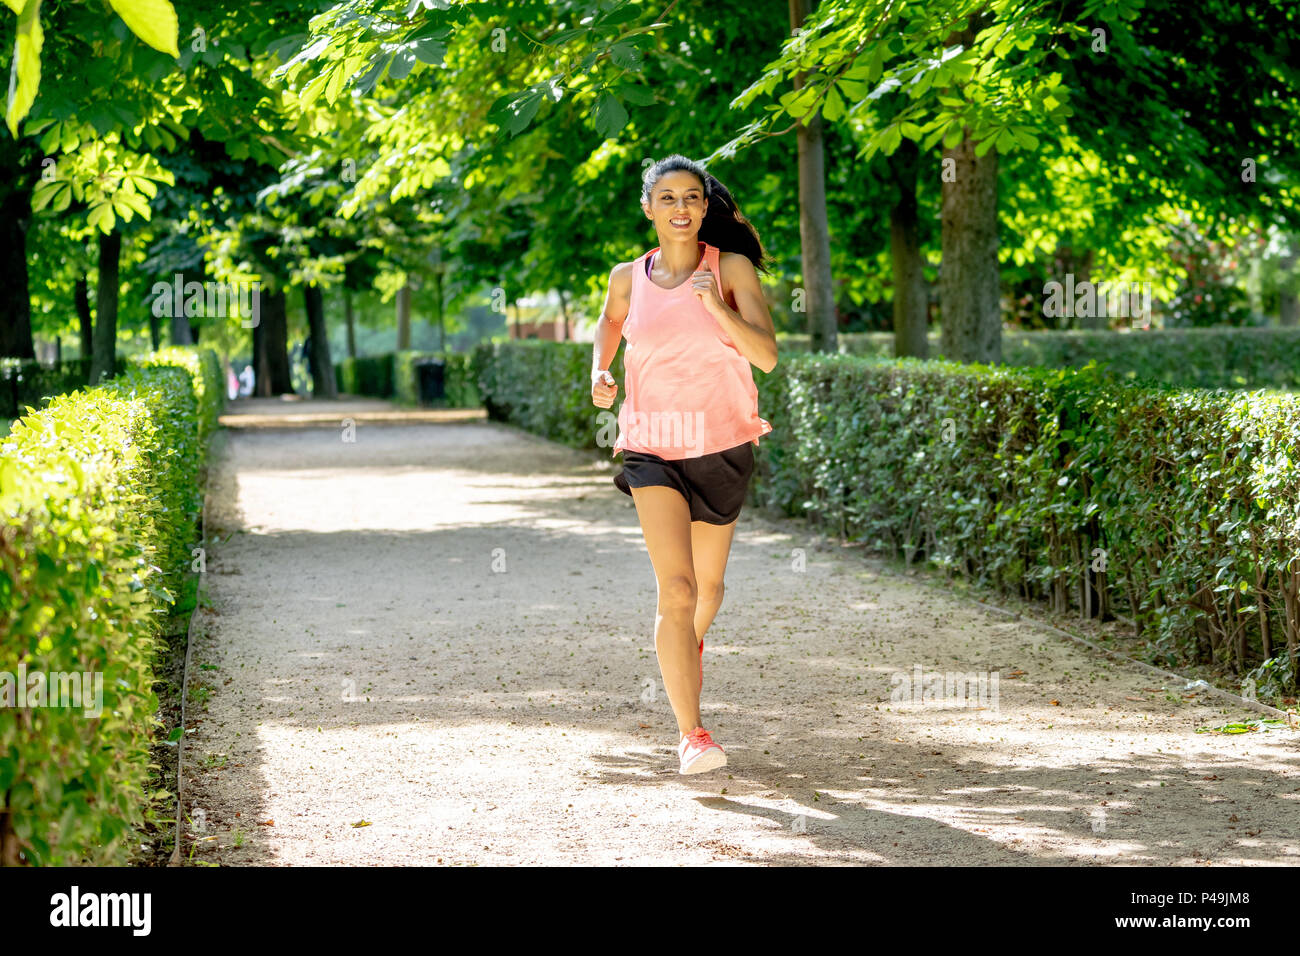 Junge attraktive und Happy runner Frau im Herbst Sportbekleidung Running und Training auf Joggen im Freien Training im City Park mit Bäumen und Gelb lassen Stockfoto